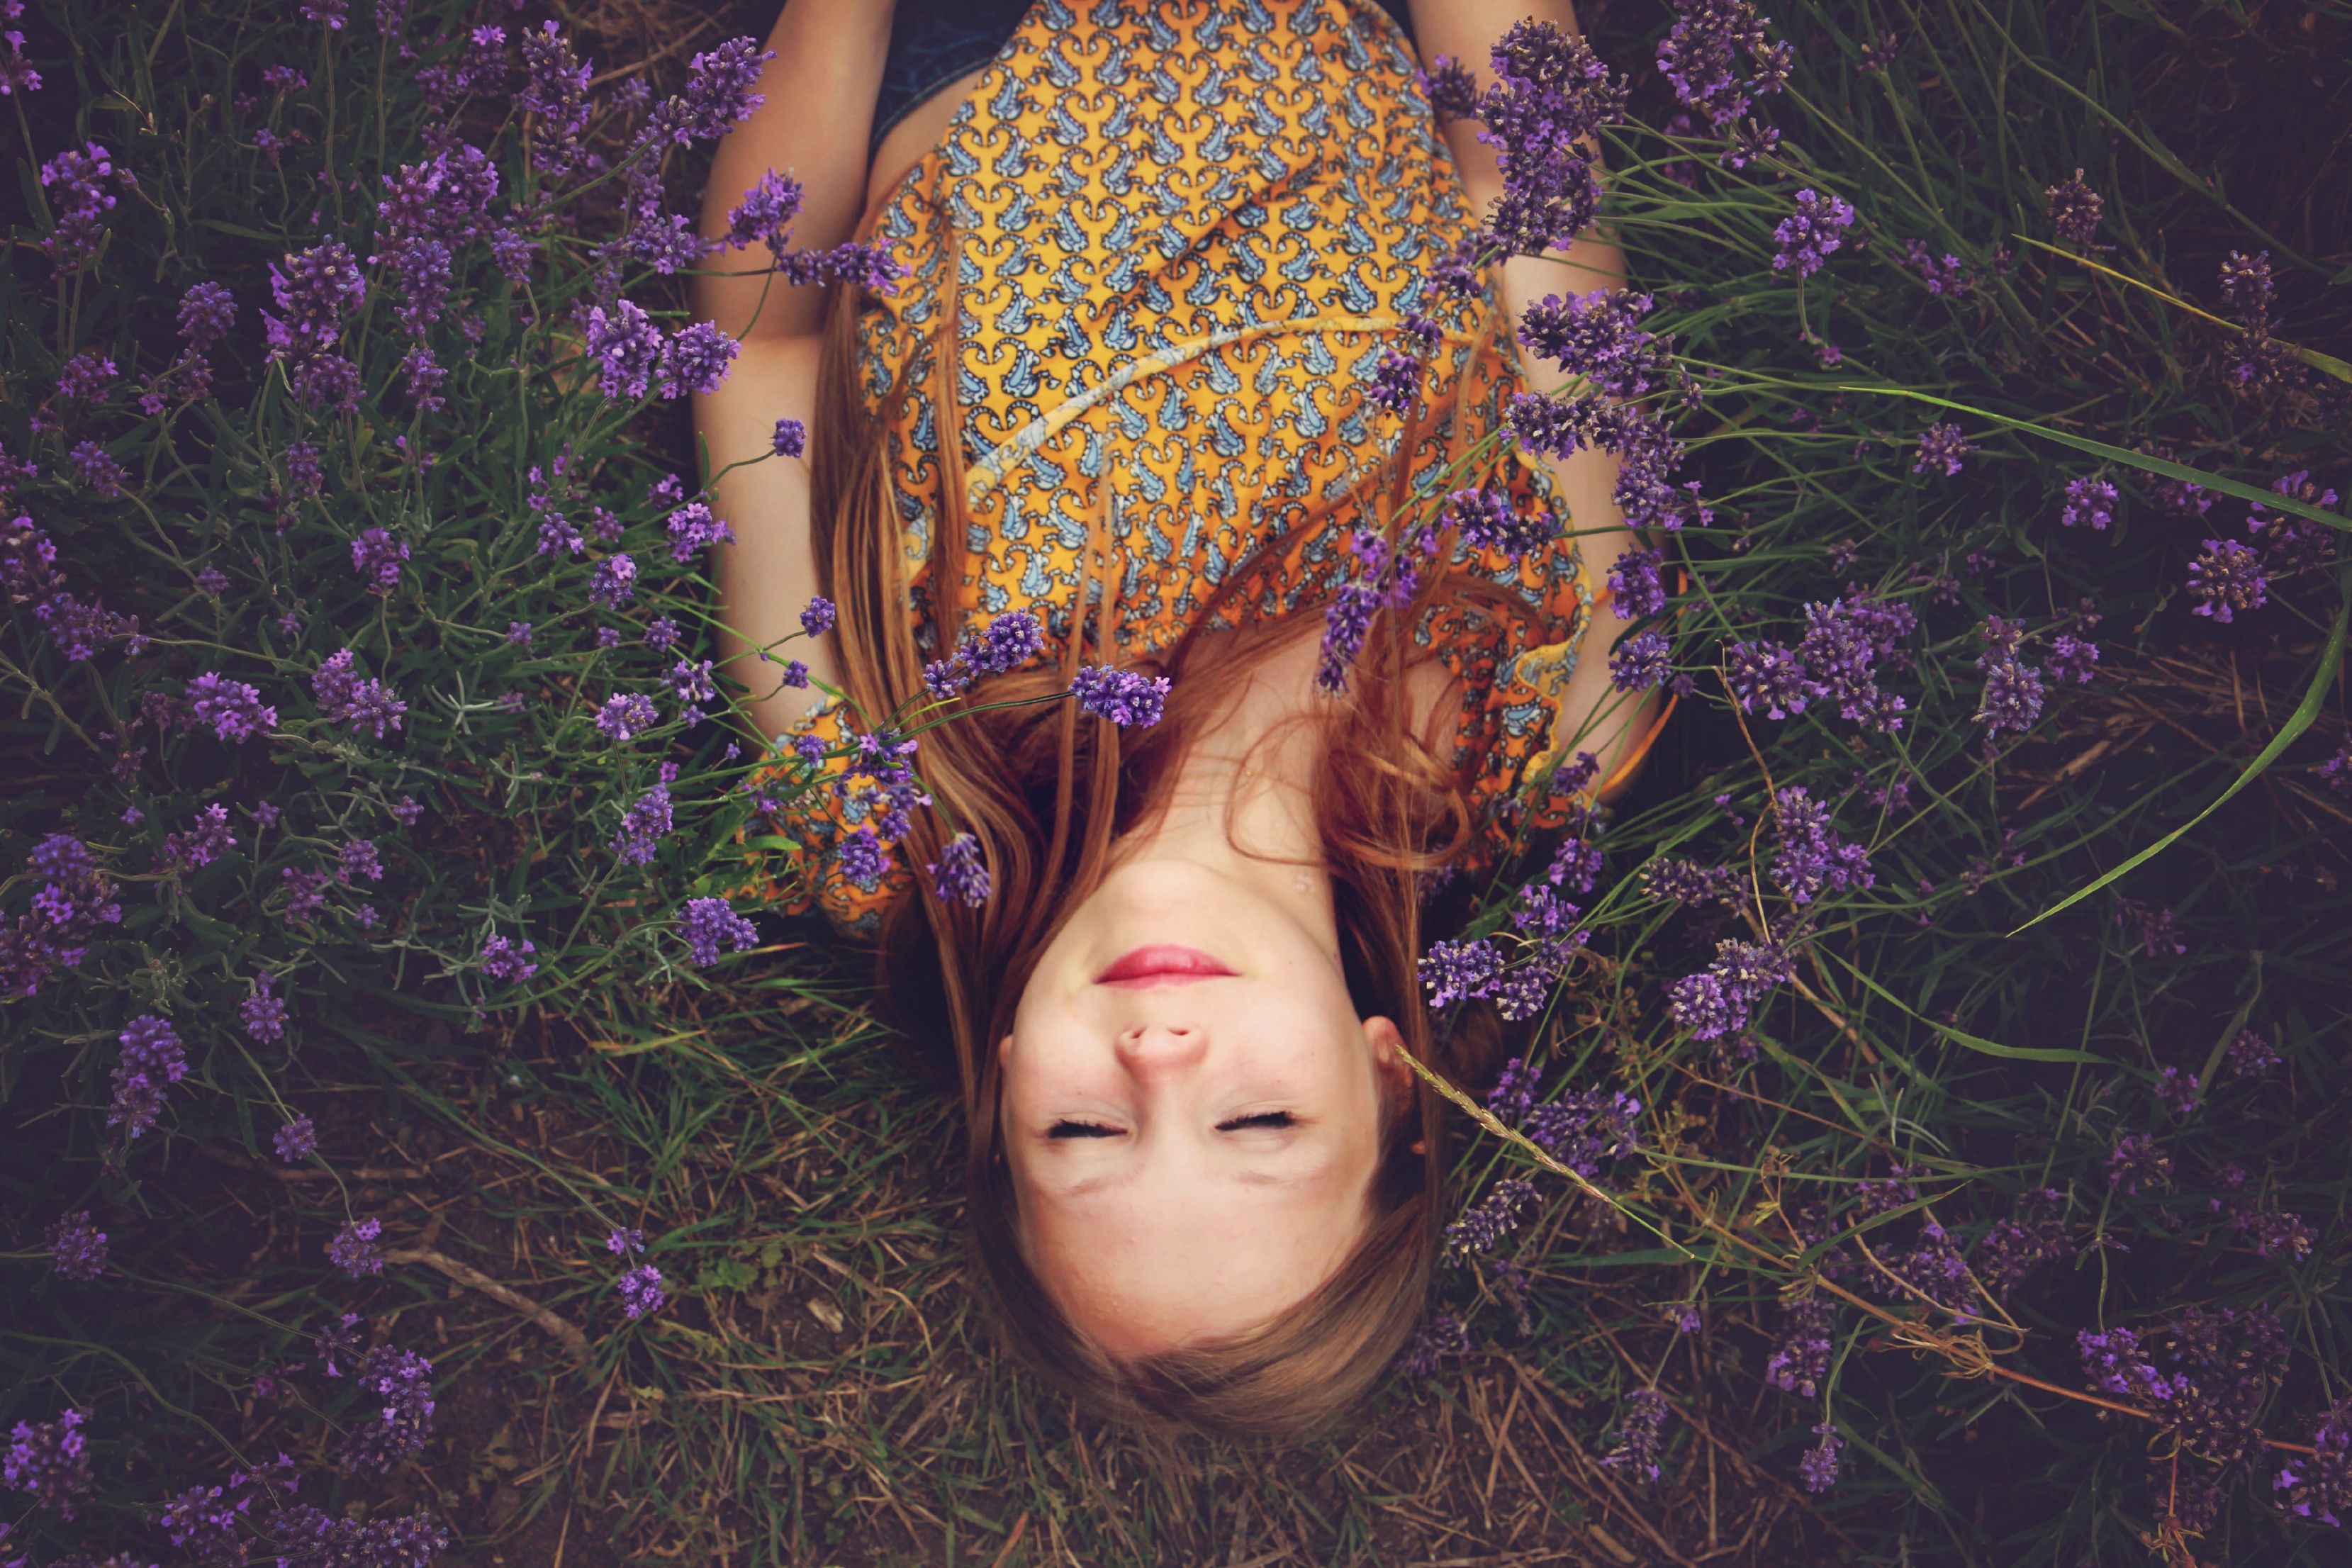 Бесплатное фото Девушка лежит в поле с фиолетовыми цветами